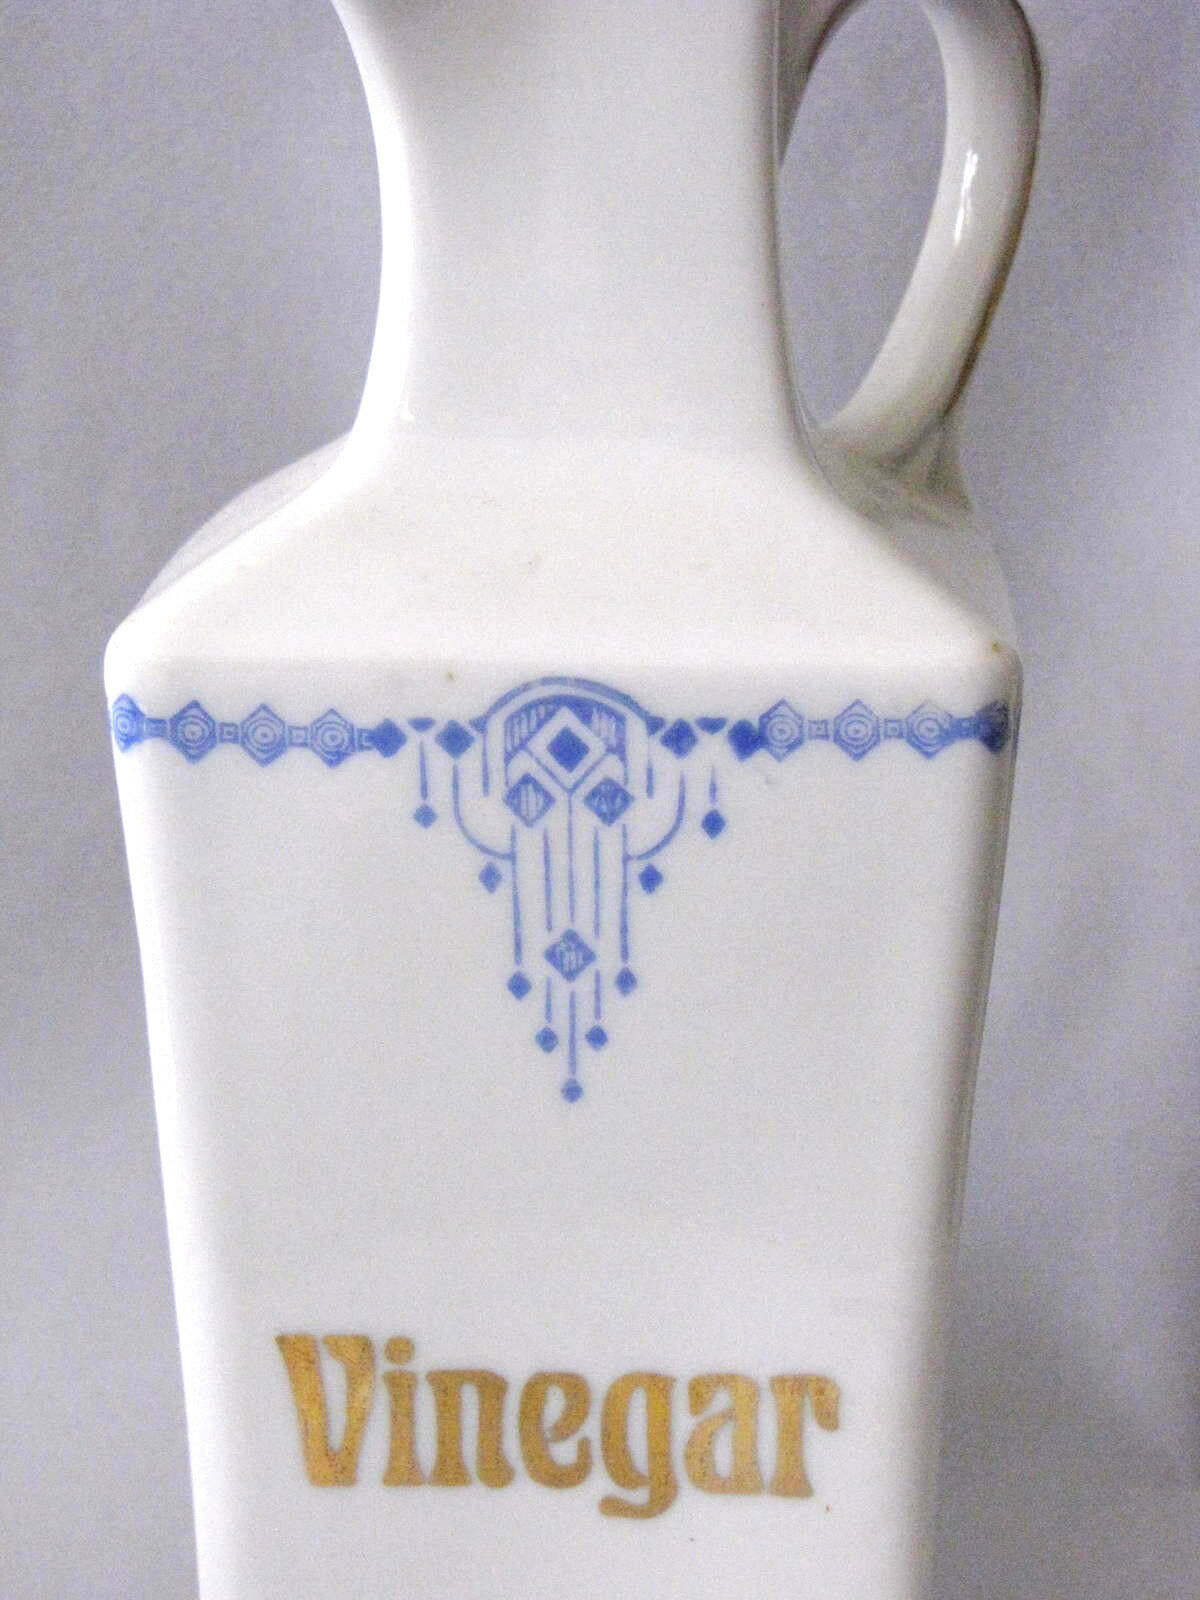 German Art Deco Design Square Vinegar Vintage Vessel Decanter Bottle